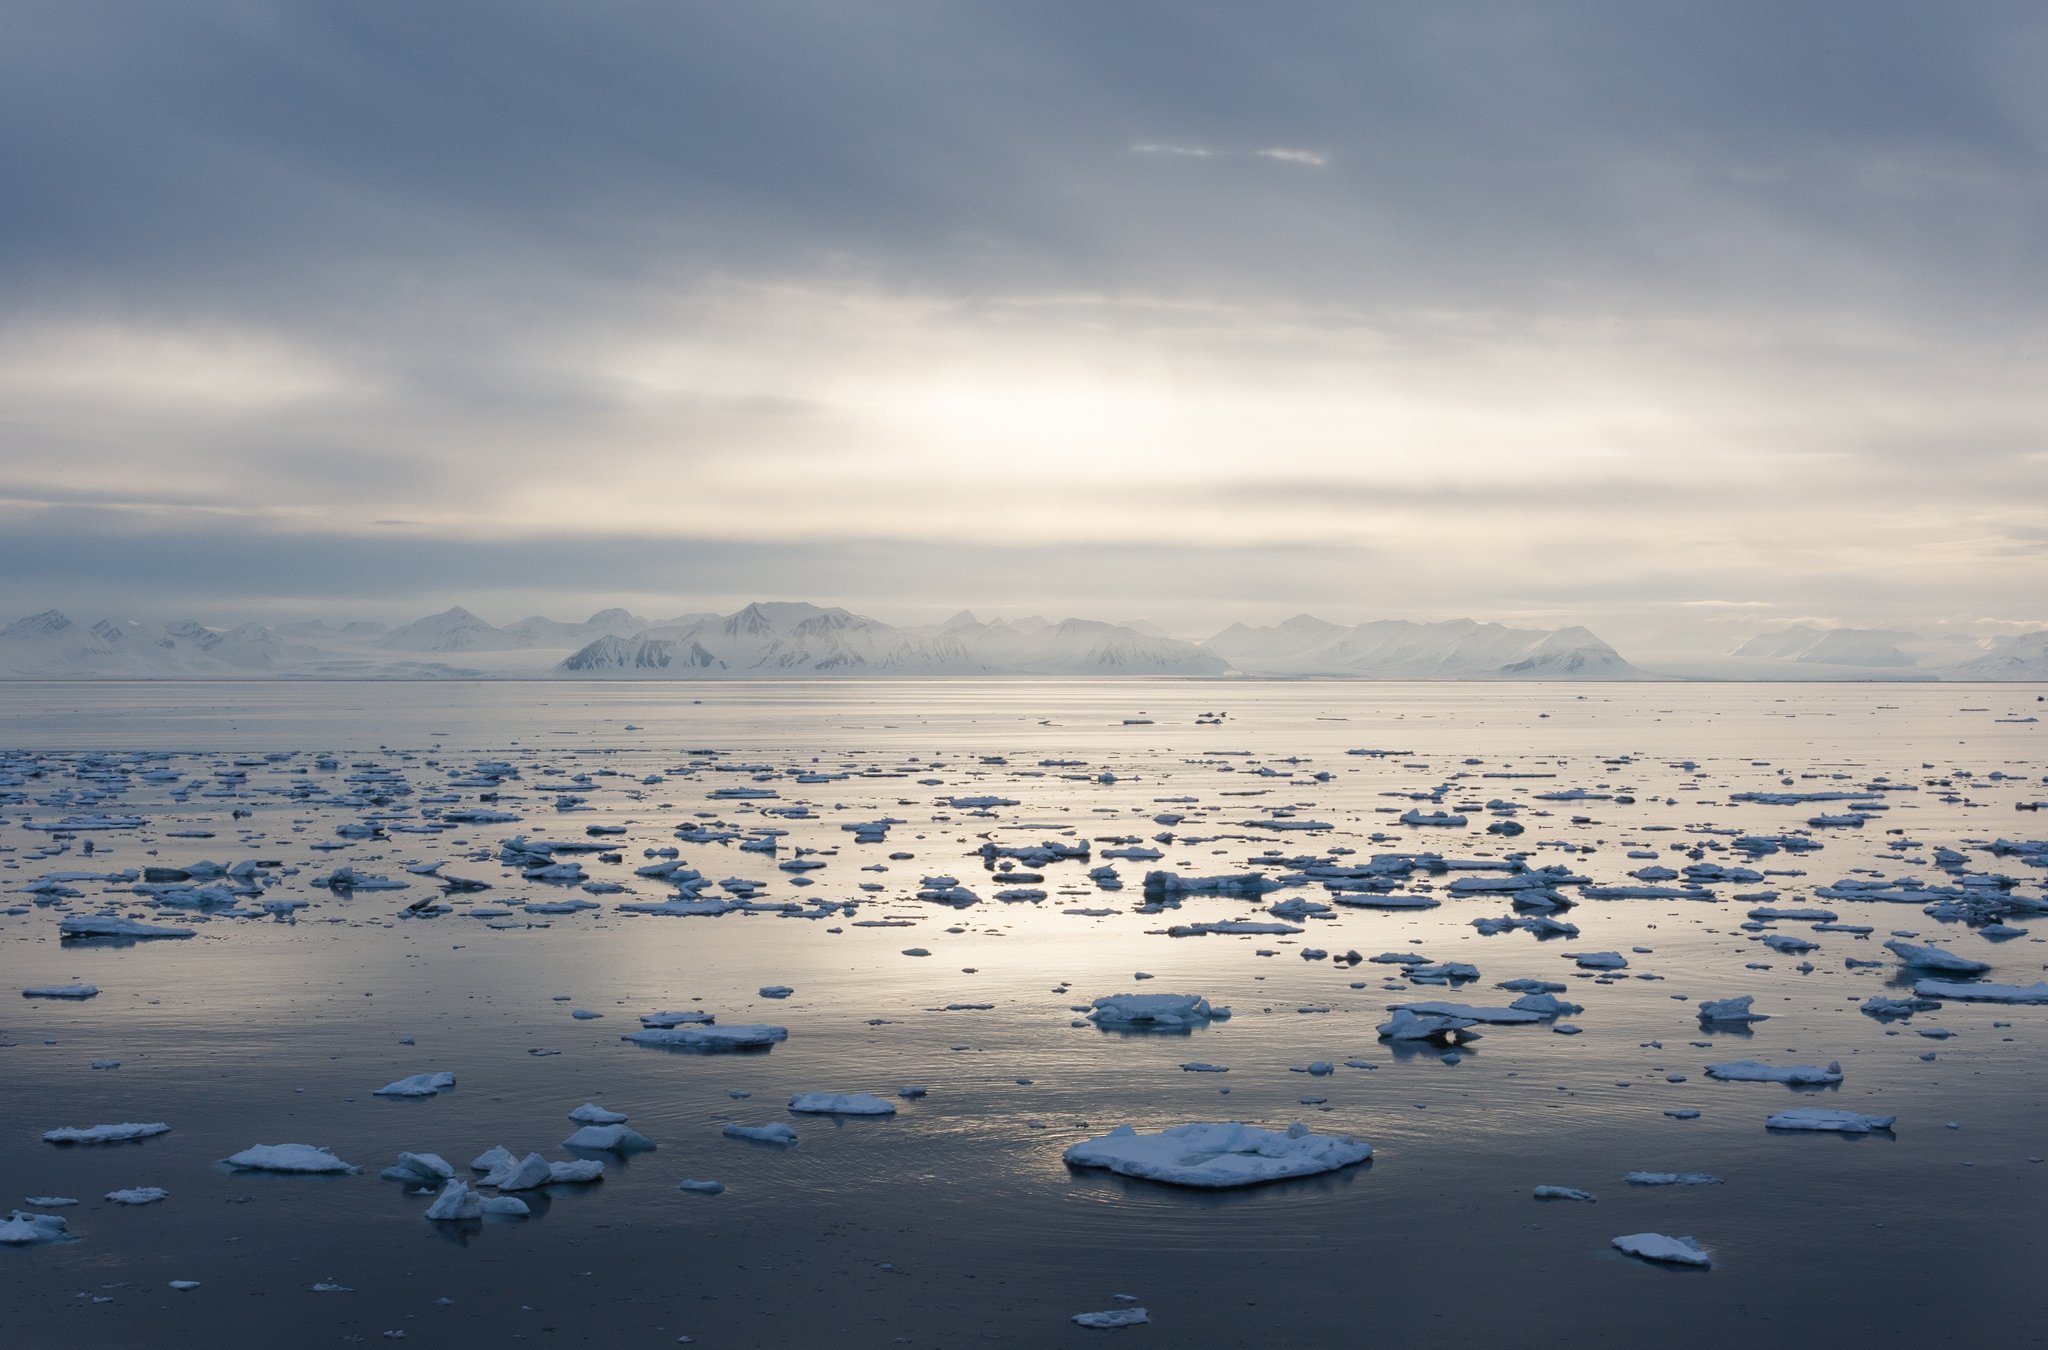 Северно ледовитый океан крупнейшее море. Белое море Северный Ледовитый океан. Балтийское море Северный Ледовитый океан. Северно Ледовитый океан канадский архипелаг. Арктический пейзаж.